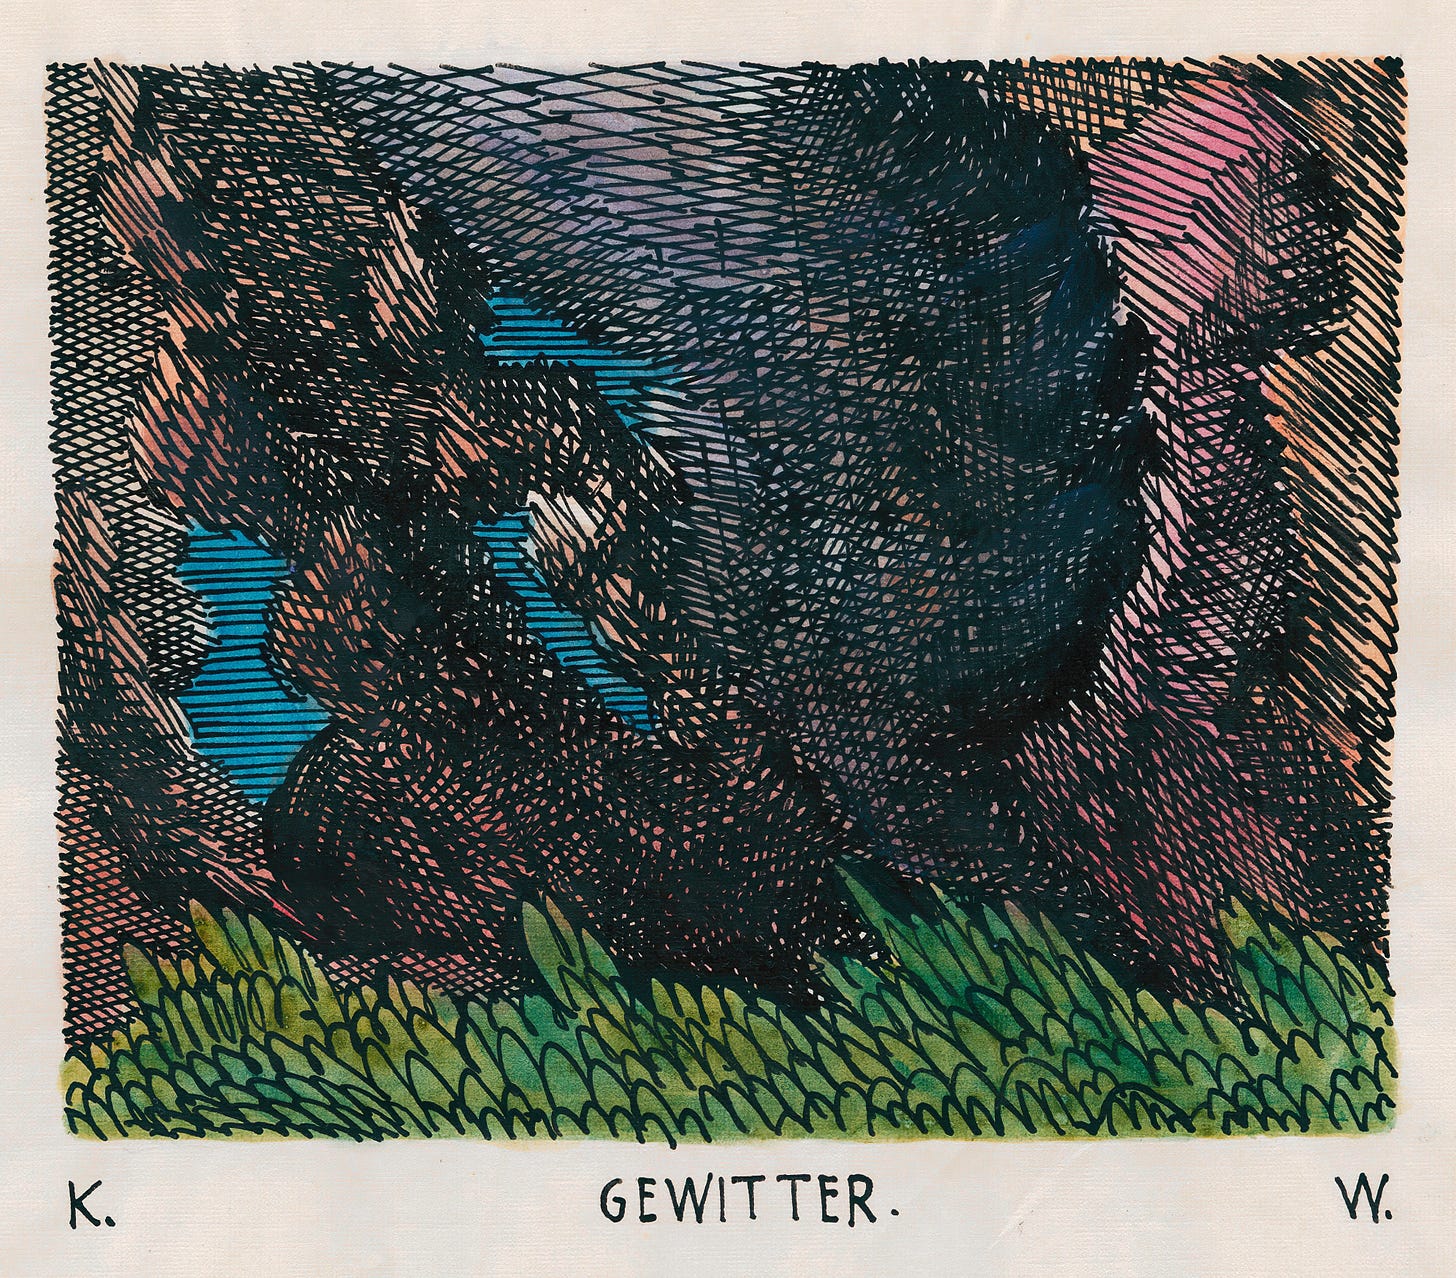 Gewitter (around 1922) by Karl Wiener